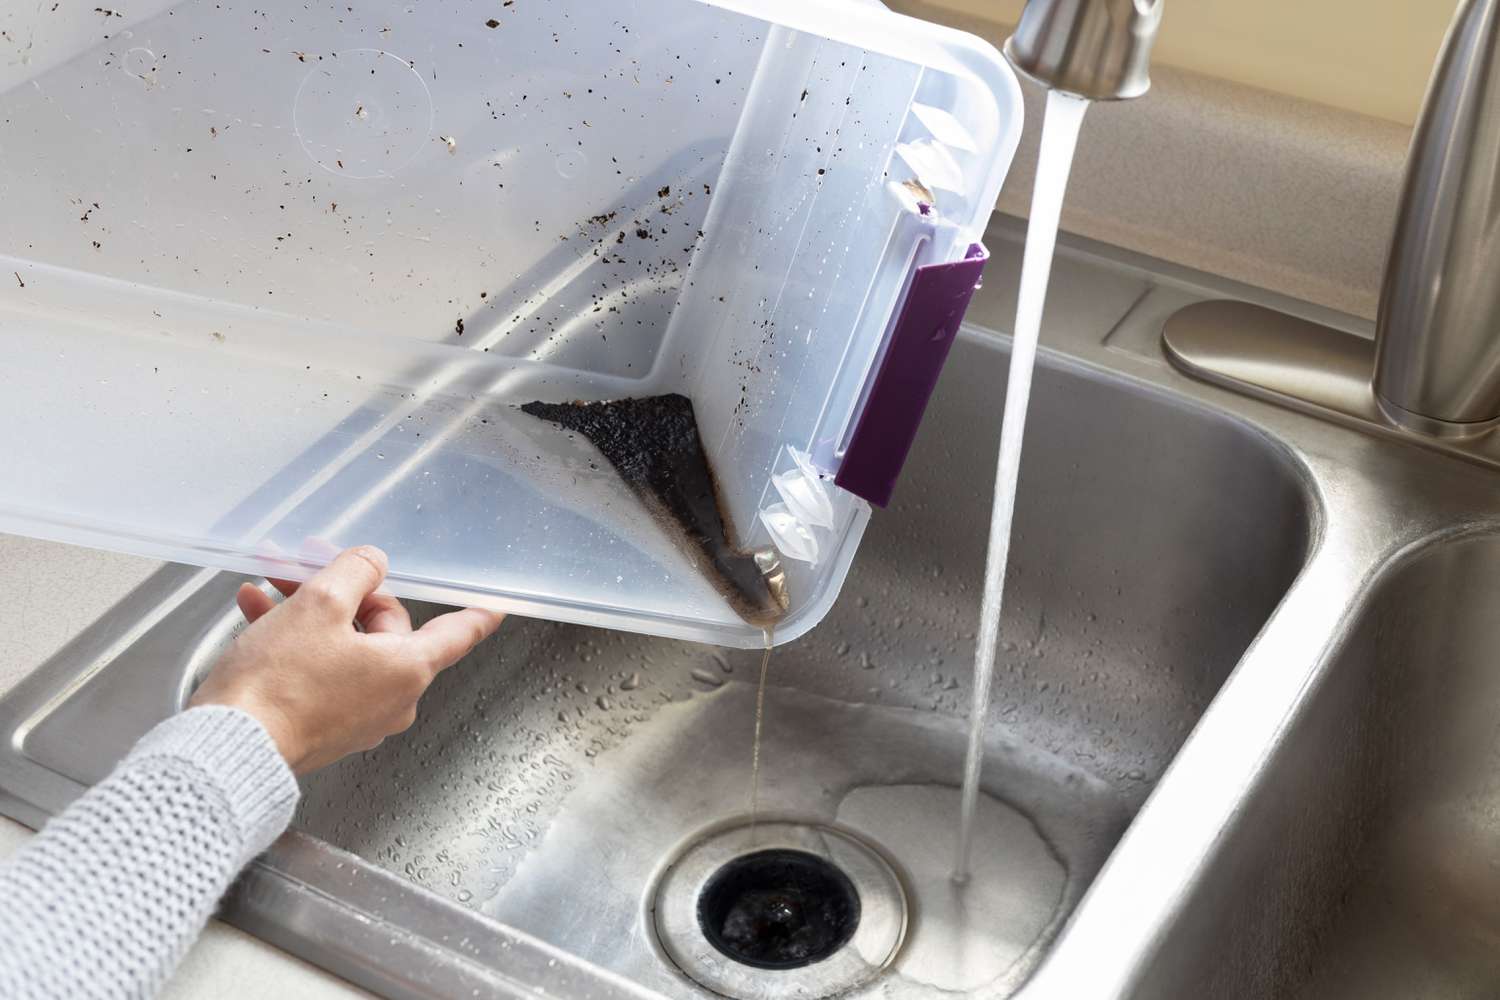 Kompostbehälter in der Küchenspüle unter fließendem Wasser geleert und gereinigt